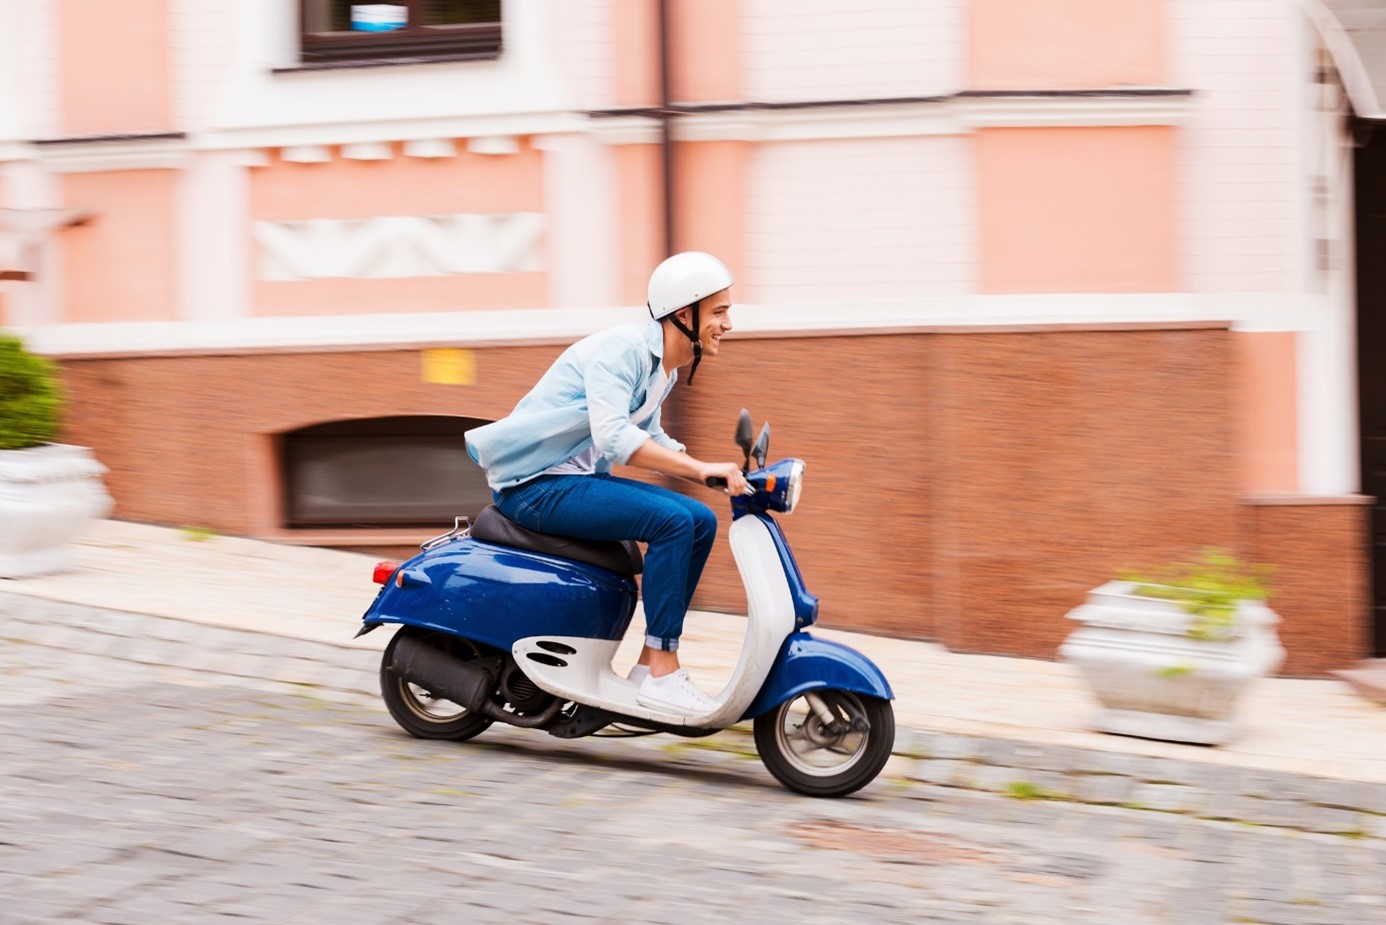 Post precedente: Quanto è utile una moto 50cc per muoversi in una città trafficata?